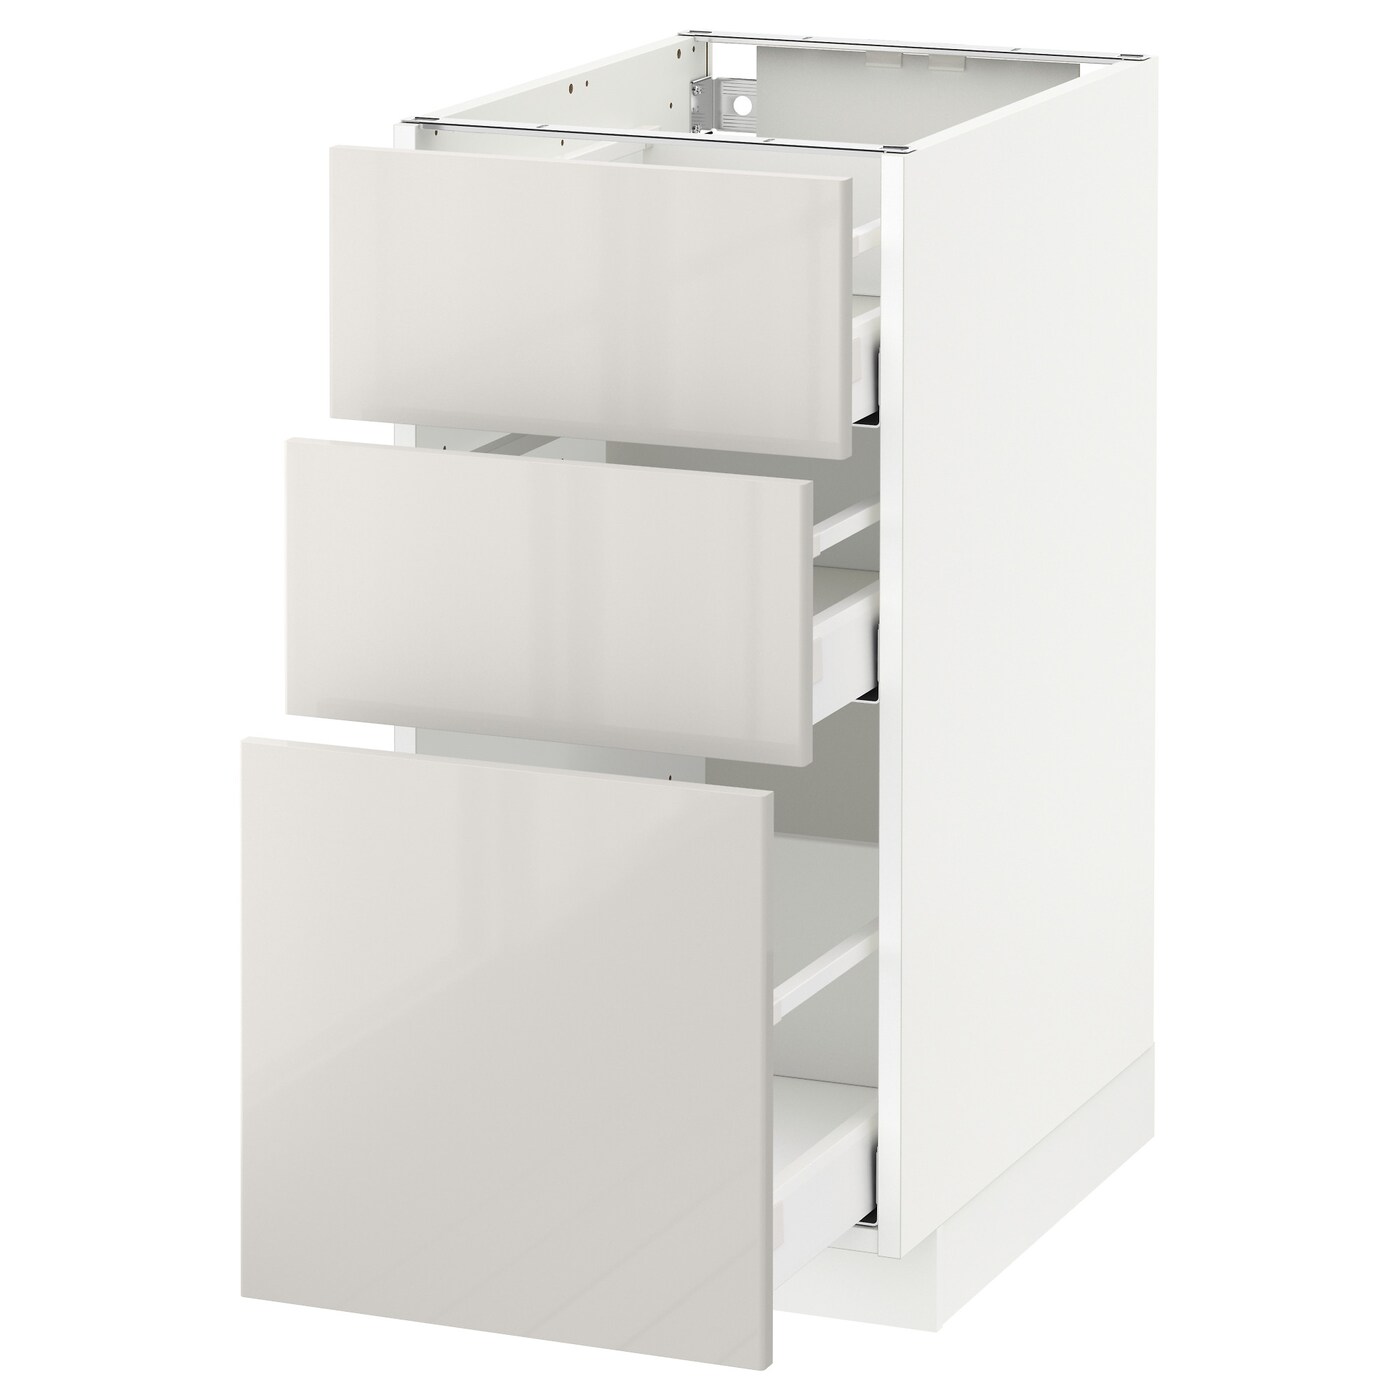 Напольный кухонный шкаф  - IKEA METOD MAXIMERA, 88x62x40см, белый/светло-серый, МЕТОД МАКСИМЕРА ИКЕА